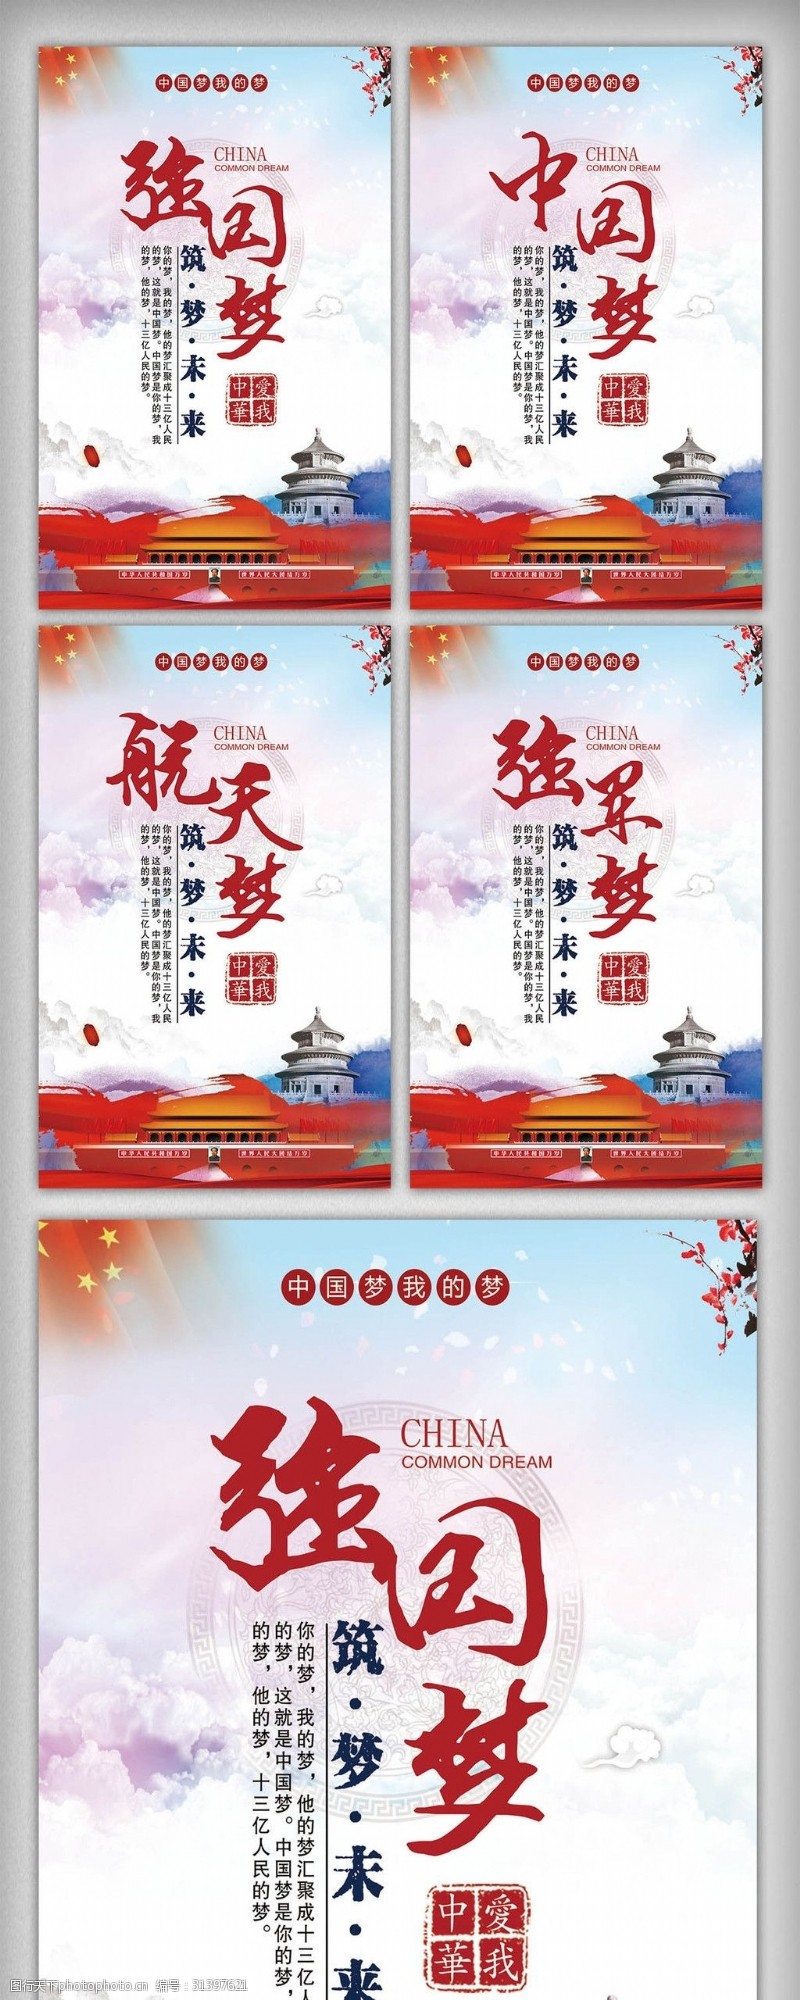 解读十九大中国梦强军梦宣传内容展板挂画设计